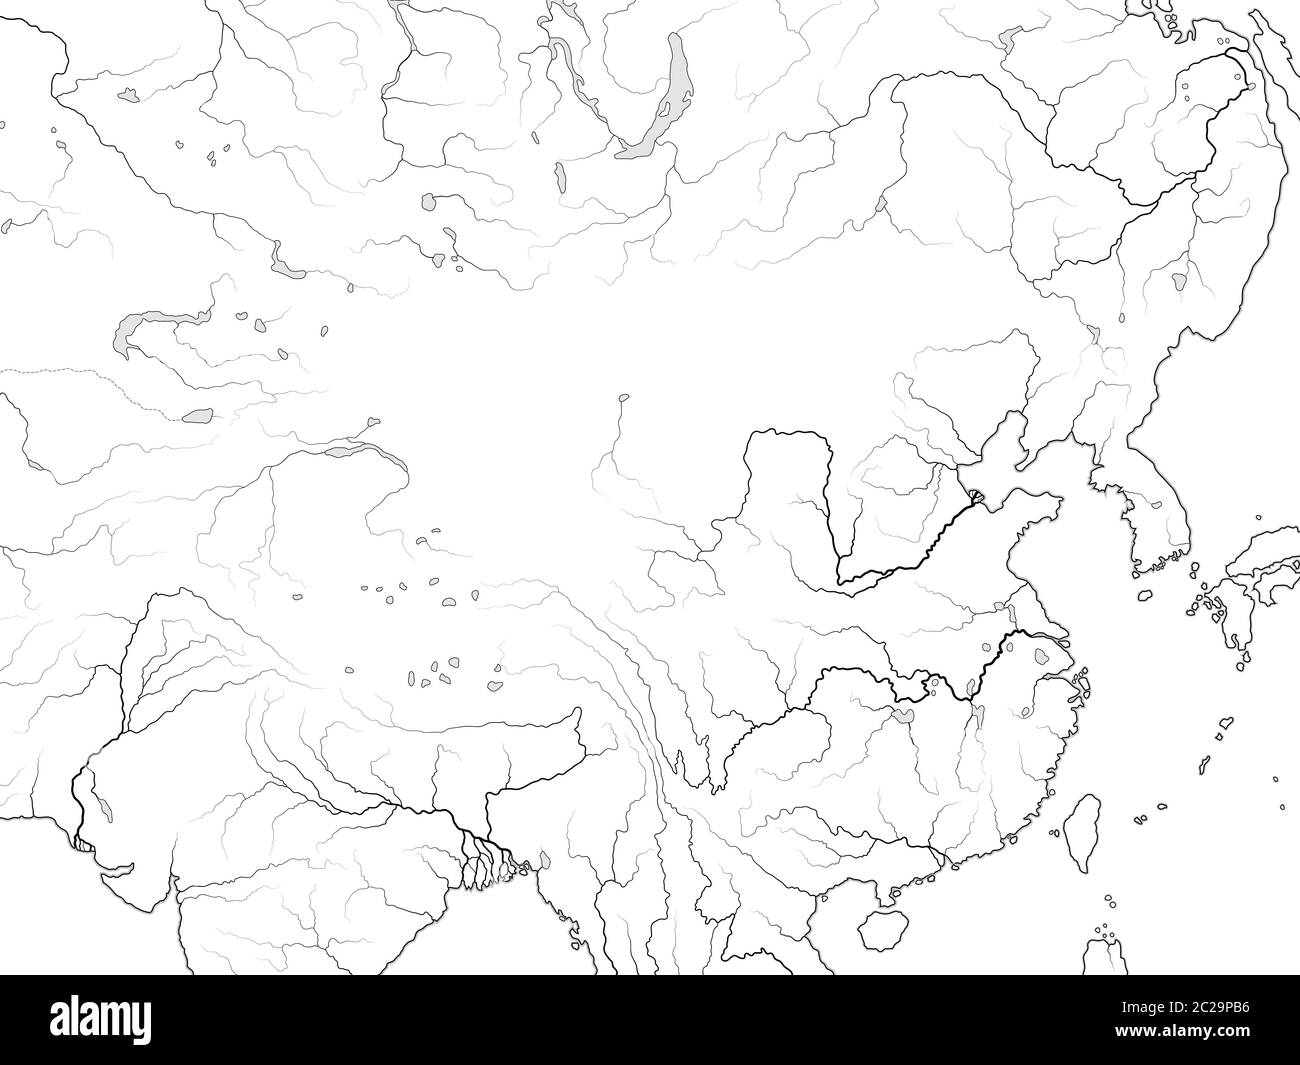 Mappa mondiale DELLA CINA: Estremo Oriente, Cina, Tibet, Mongolia, Dzungaria, Manciuria, Corea, Taiwan. Grafico geografico. Foto Stock